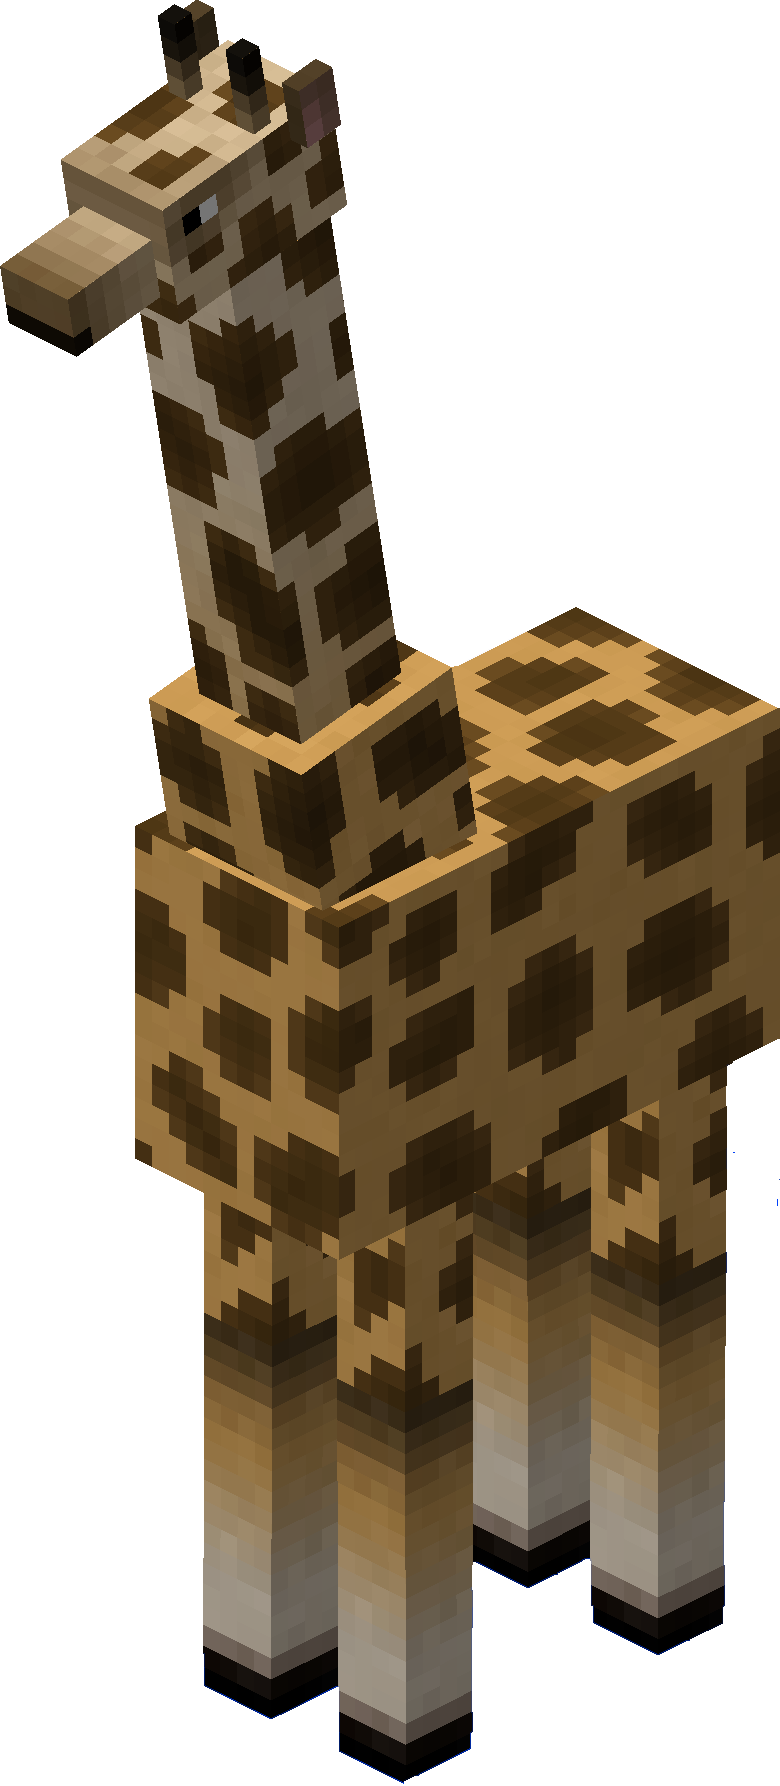 Giraffe - Minecraft Giraffe (780x1786), Png Download